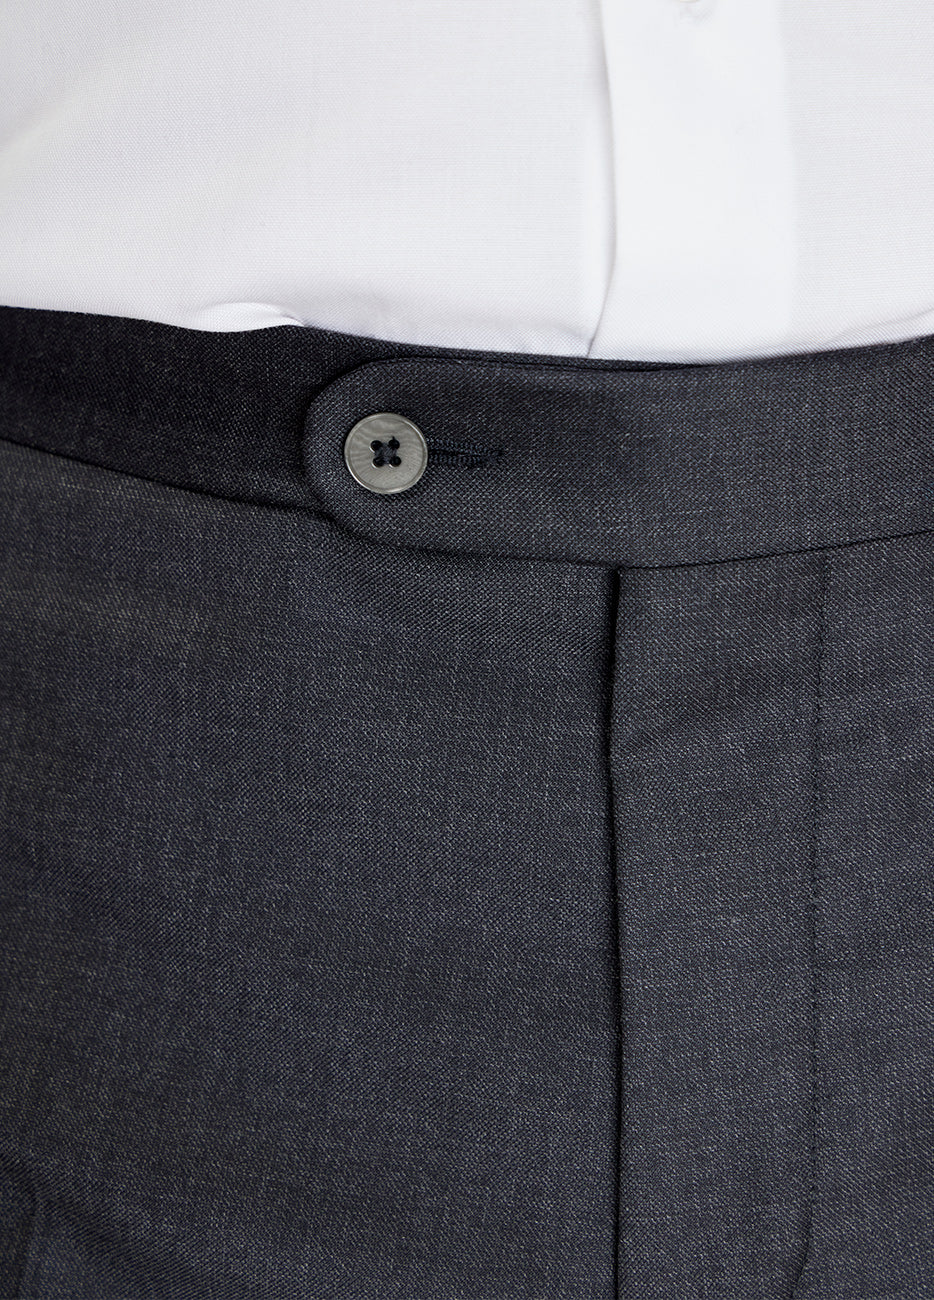 Pantalón gris oxford estilo plano liso marca Business casual clasico